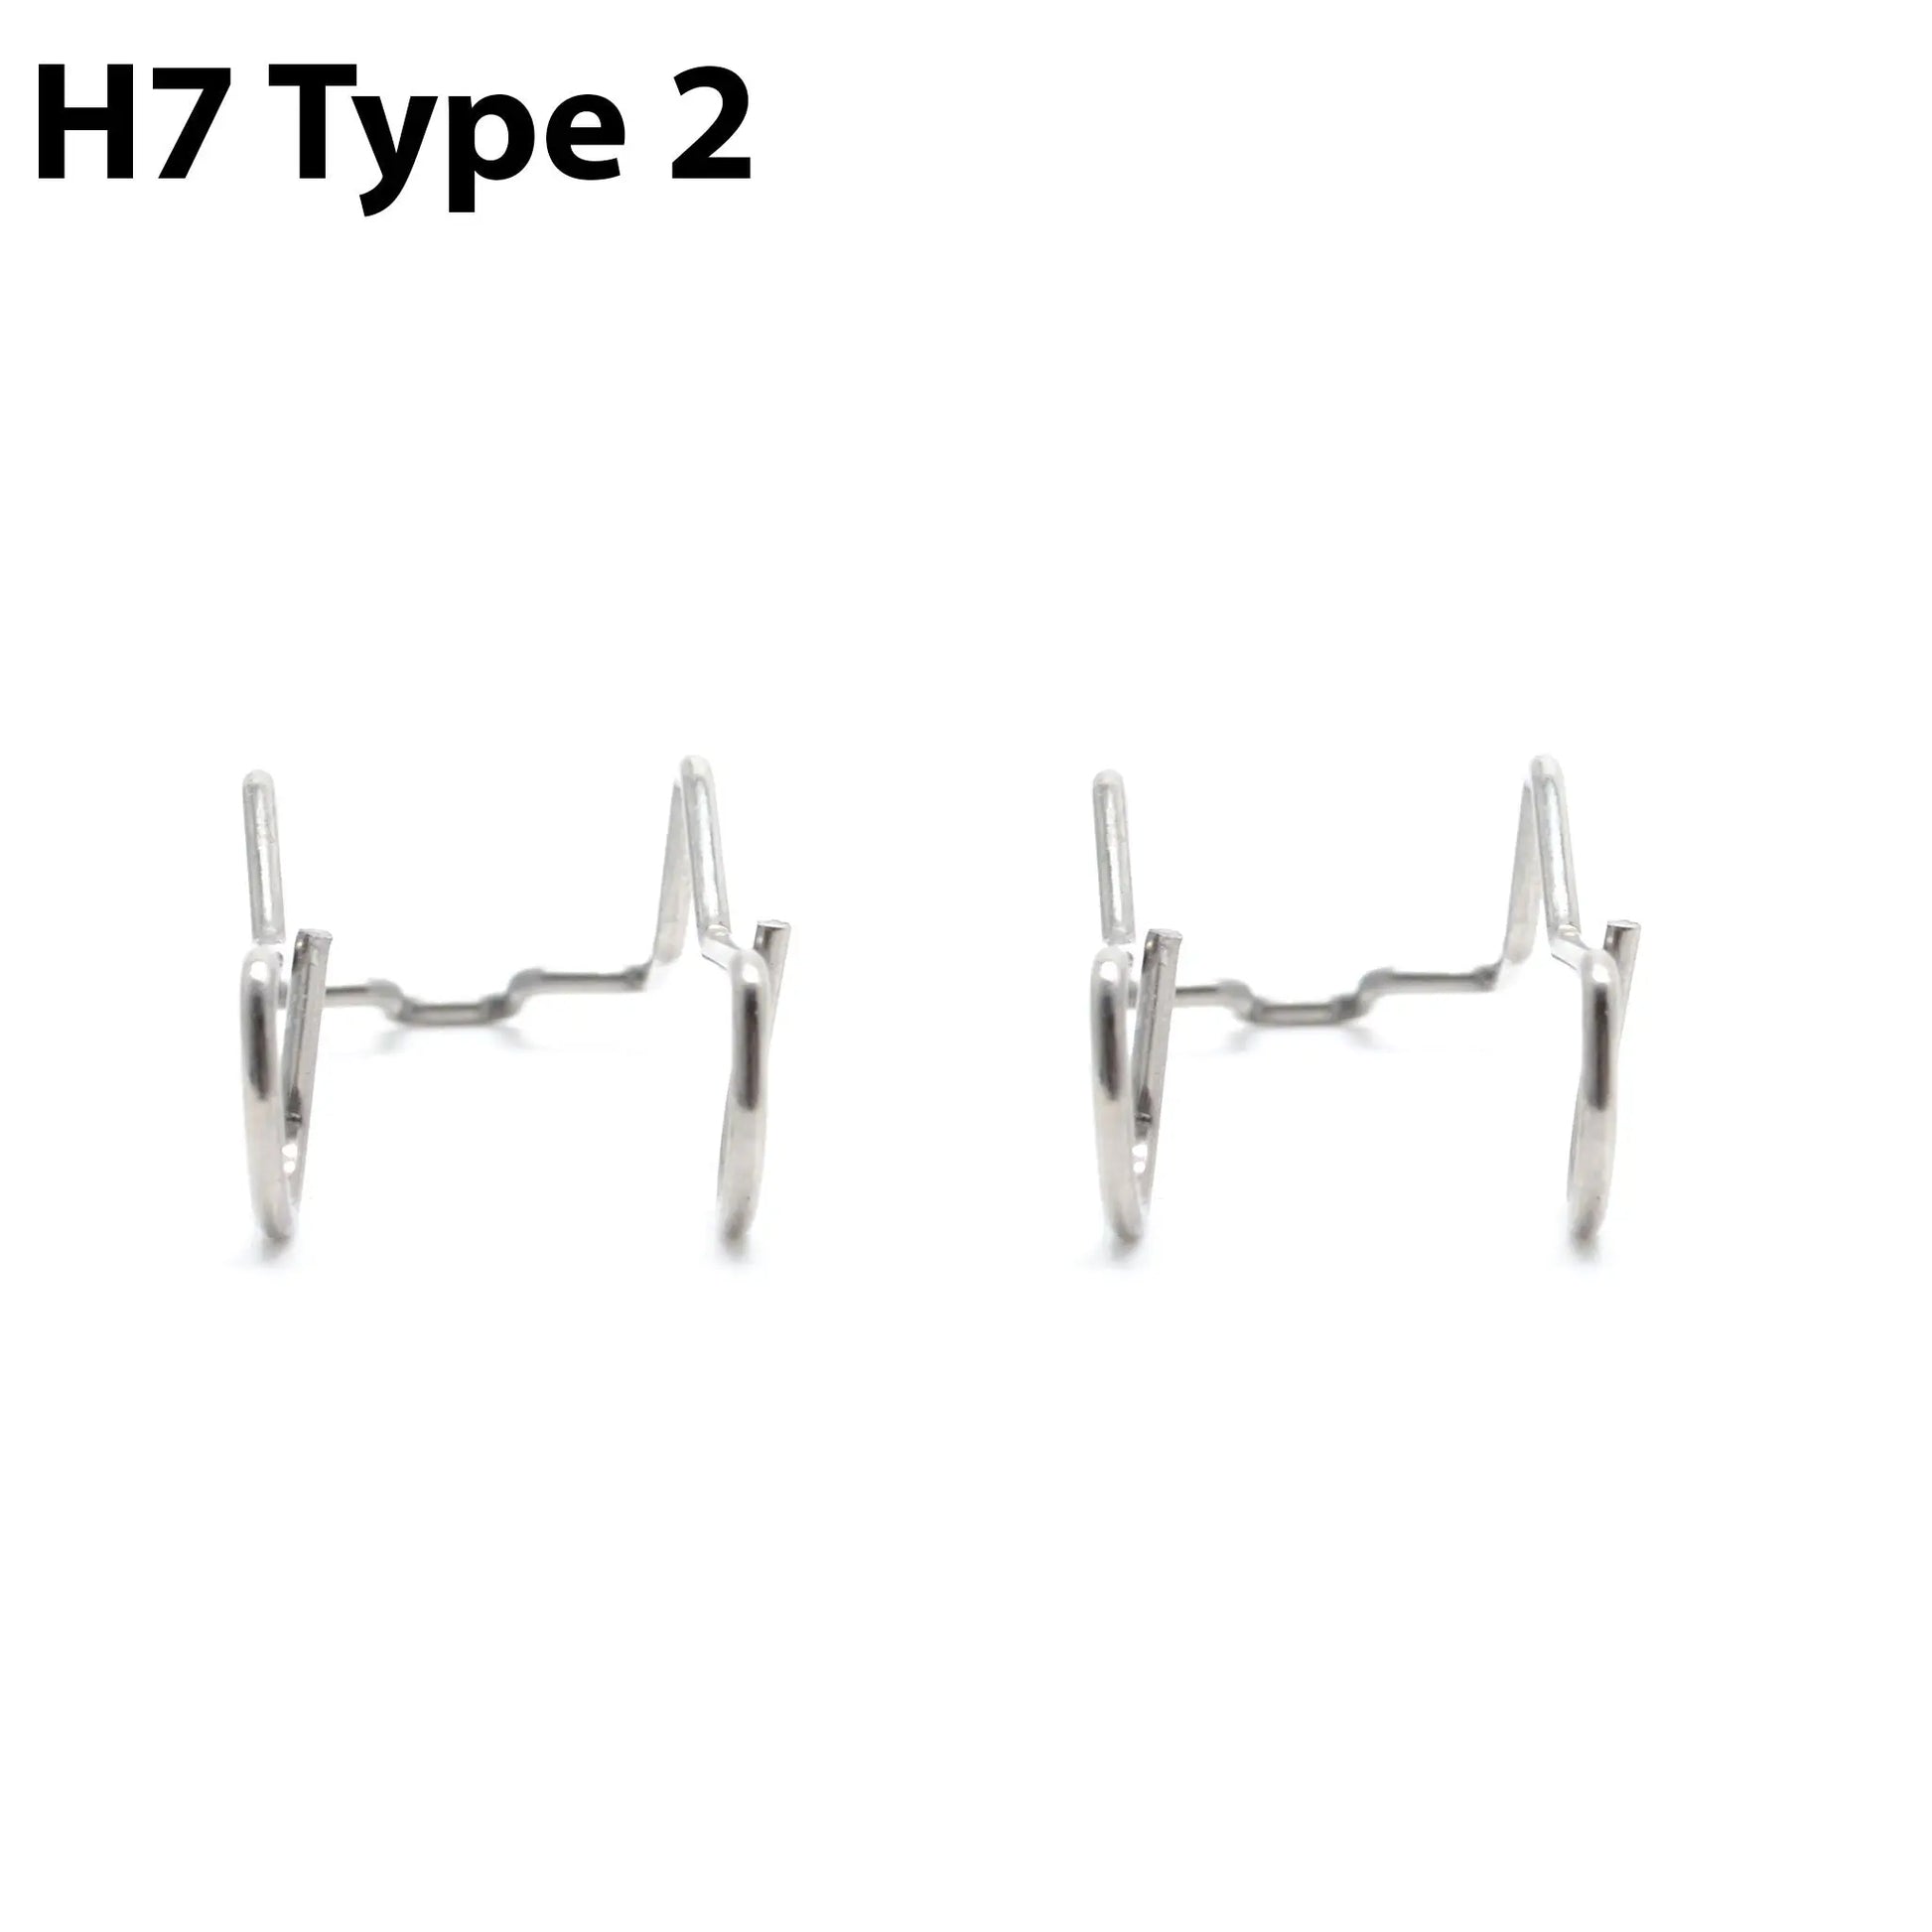 Pæreholder: Halogen pærer H4 og H7 - Lyshelten.no